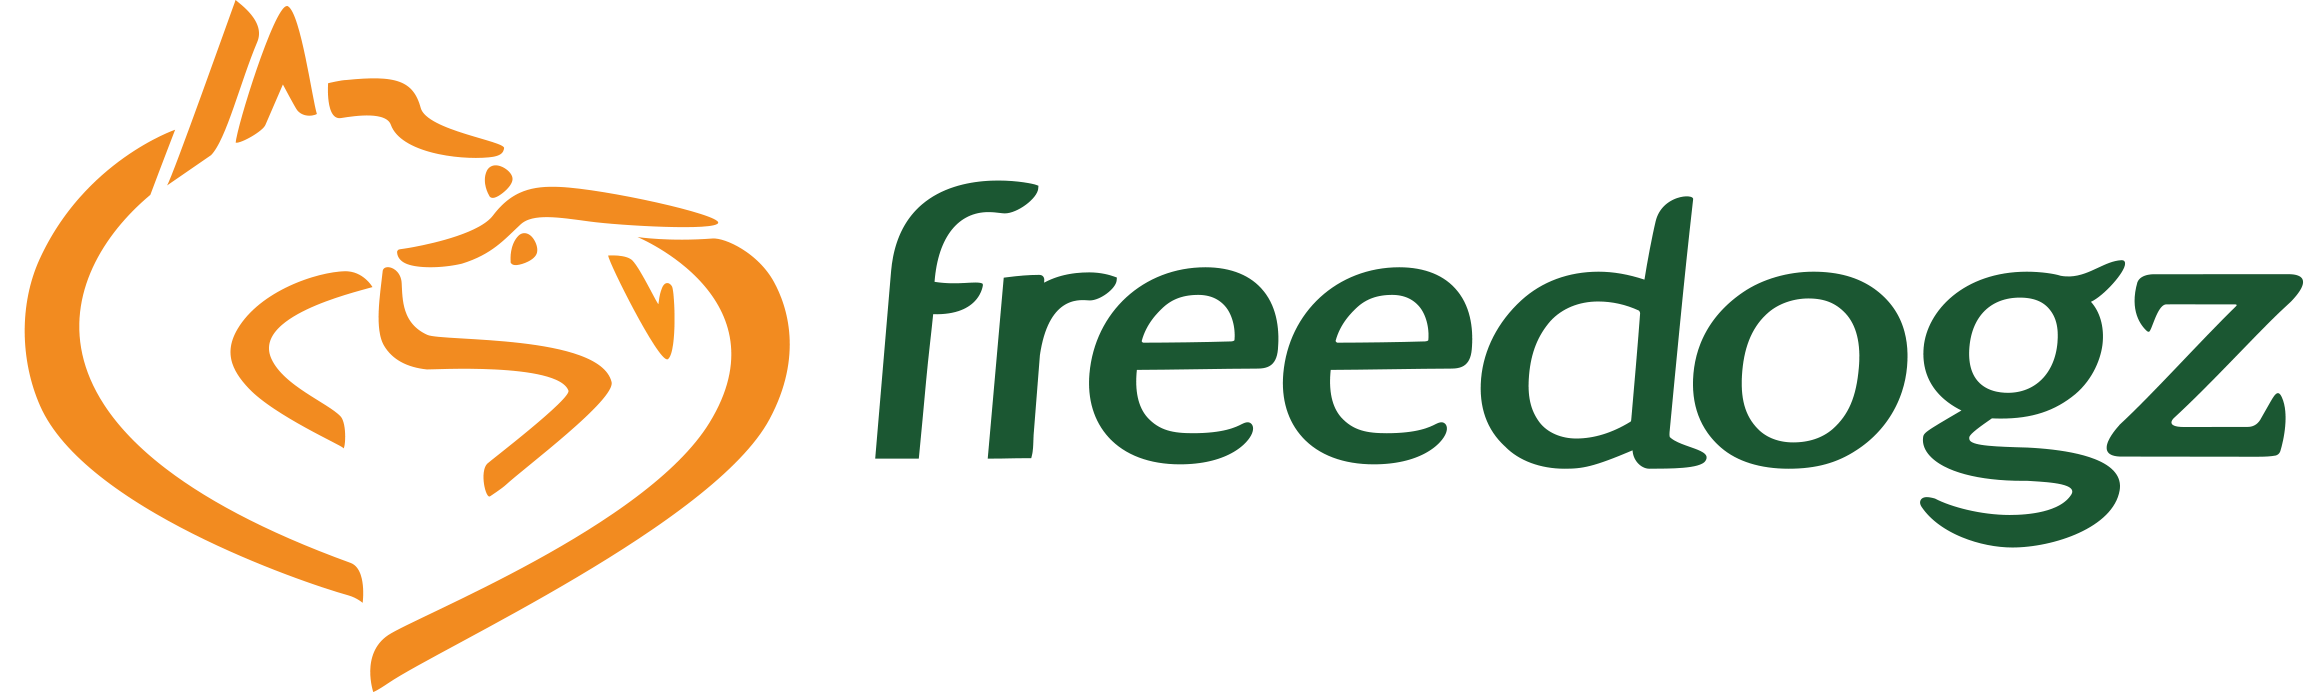 Freedogz - Els De Vidts